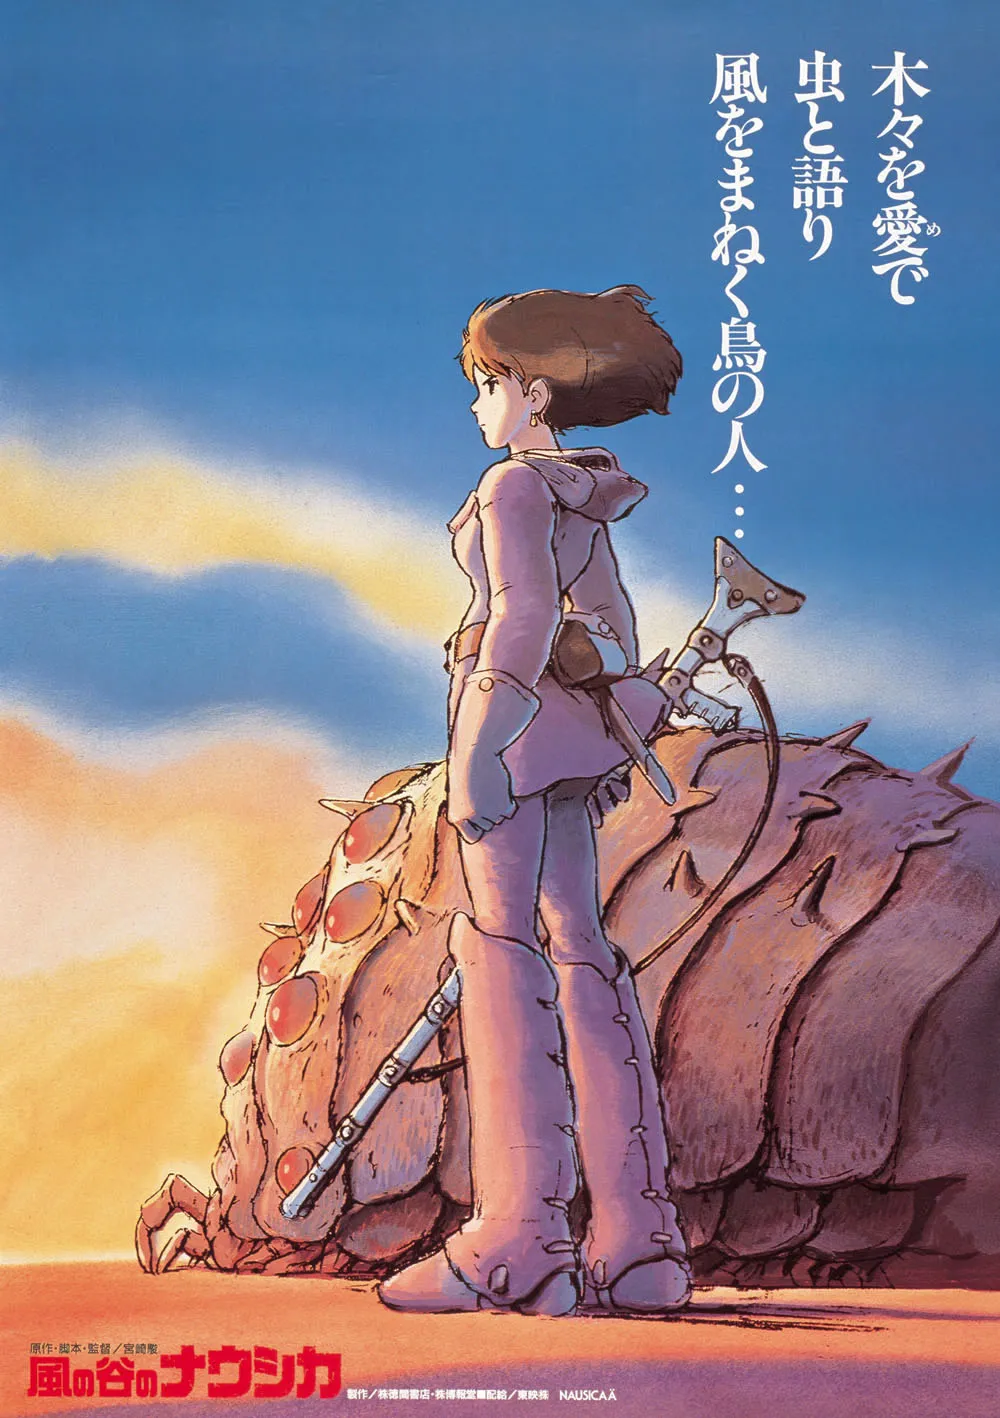 1984年公開。大戦争の終わった世界を舞台に、人類の進むべき道を探す少女・ナウシカの姿を描く「風の谷のナウシカ」